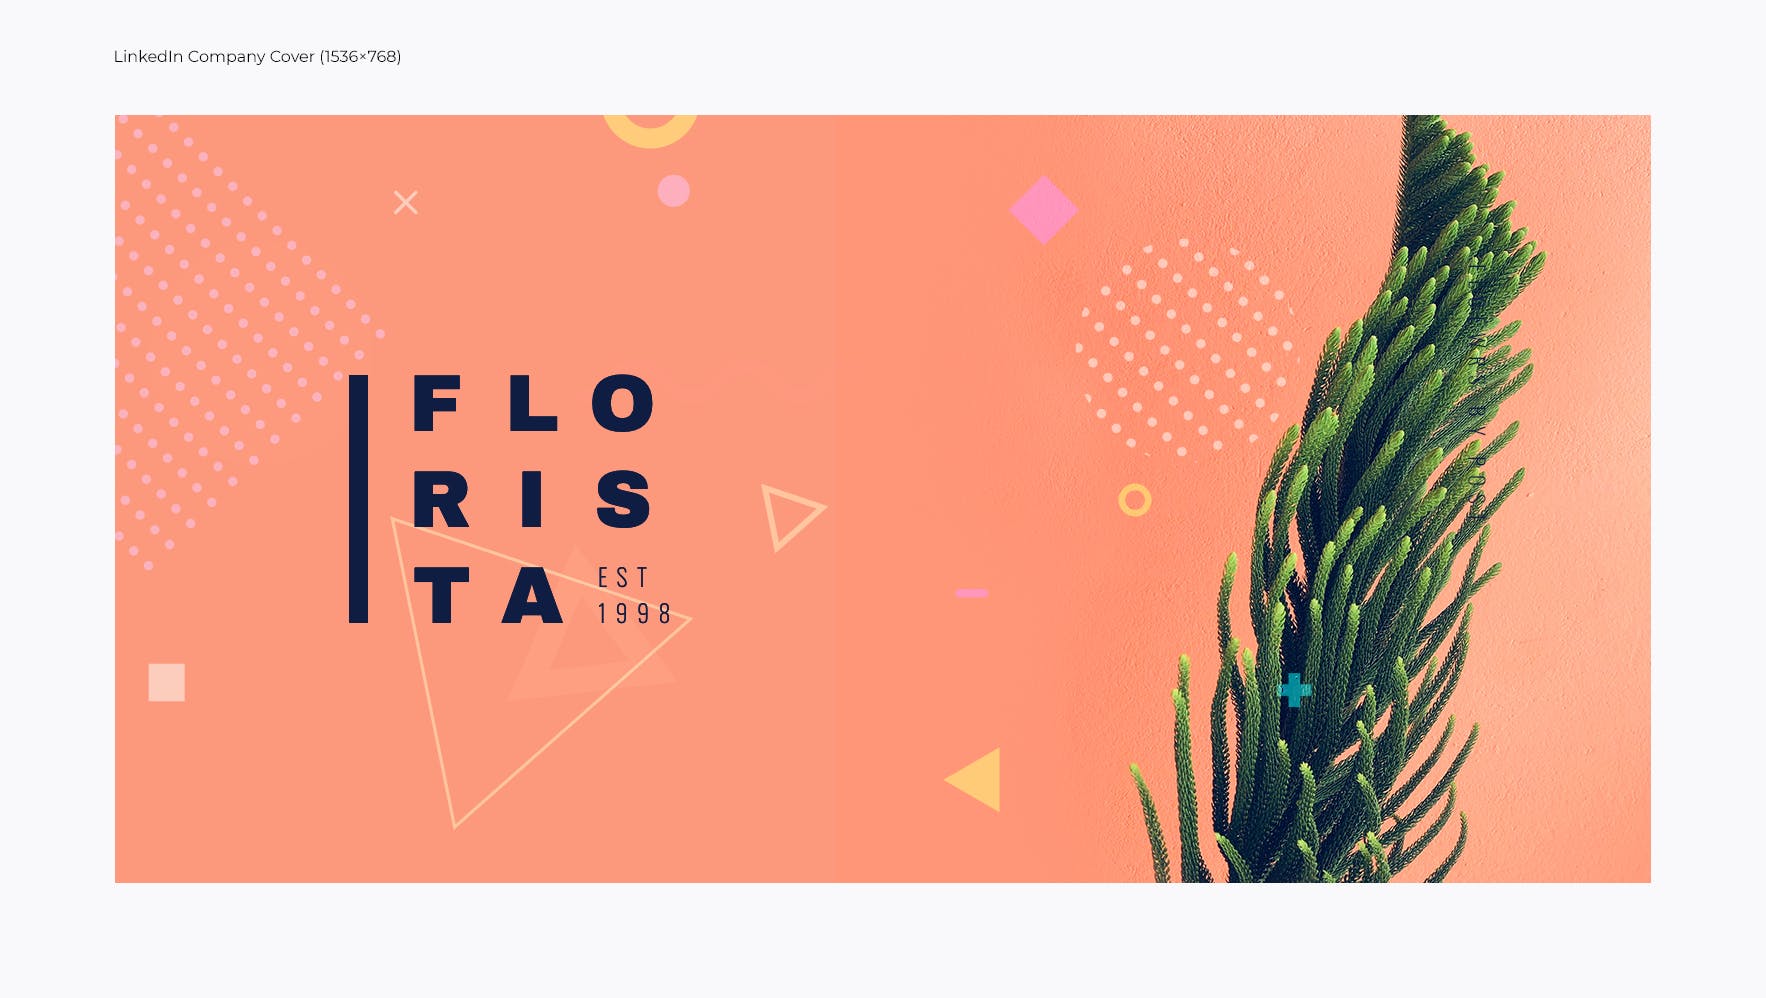 花卉设计风格社交媒体设计素材包 Floral Design Studio – Social Media Kit插图(7)